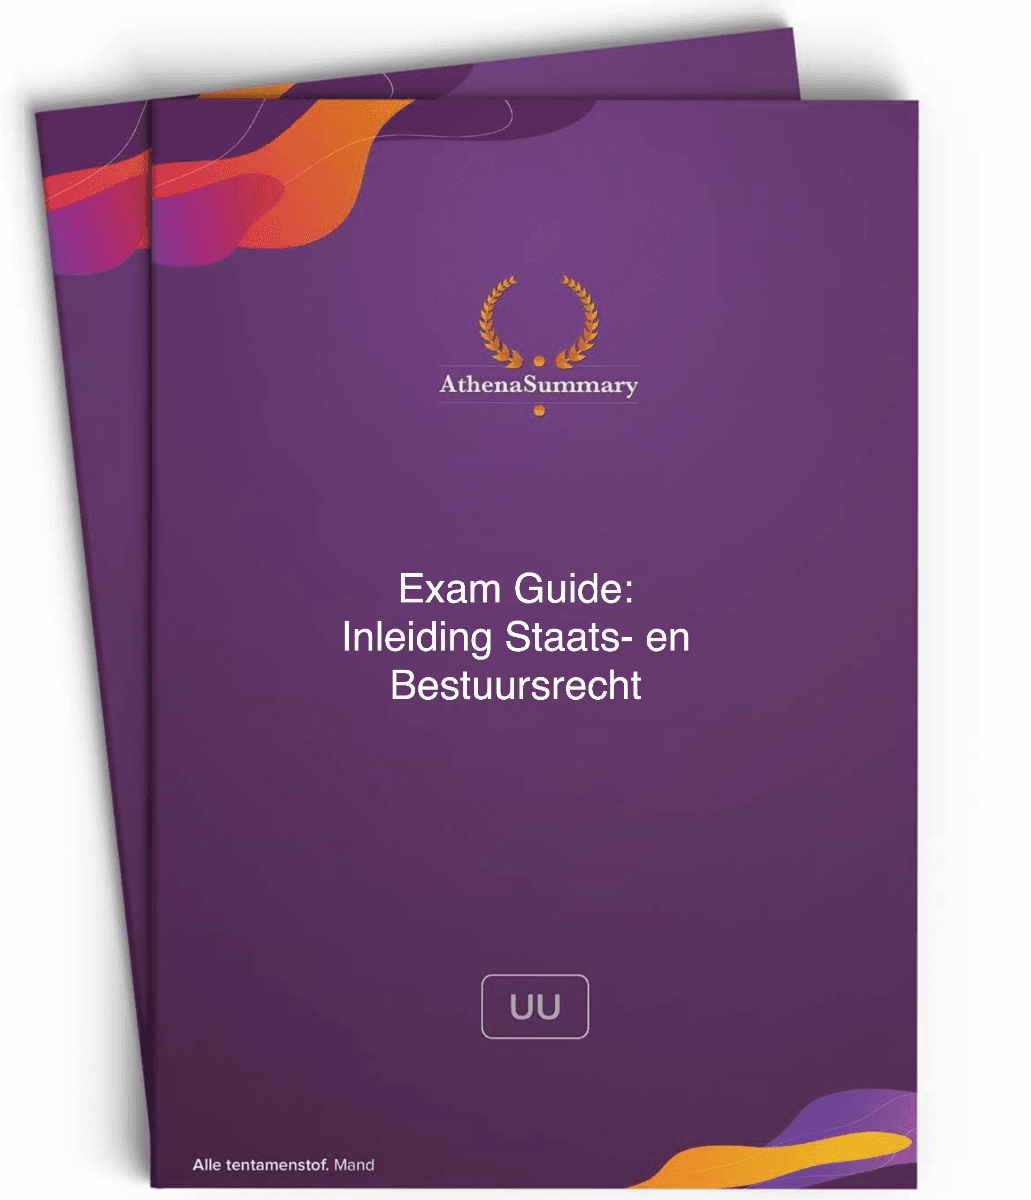 Exam Guide - Inleiding Staats- en Bestuursrecht UU 23